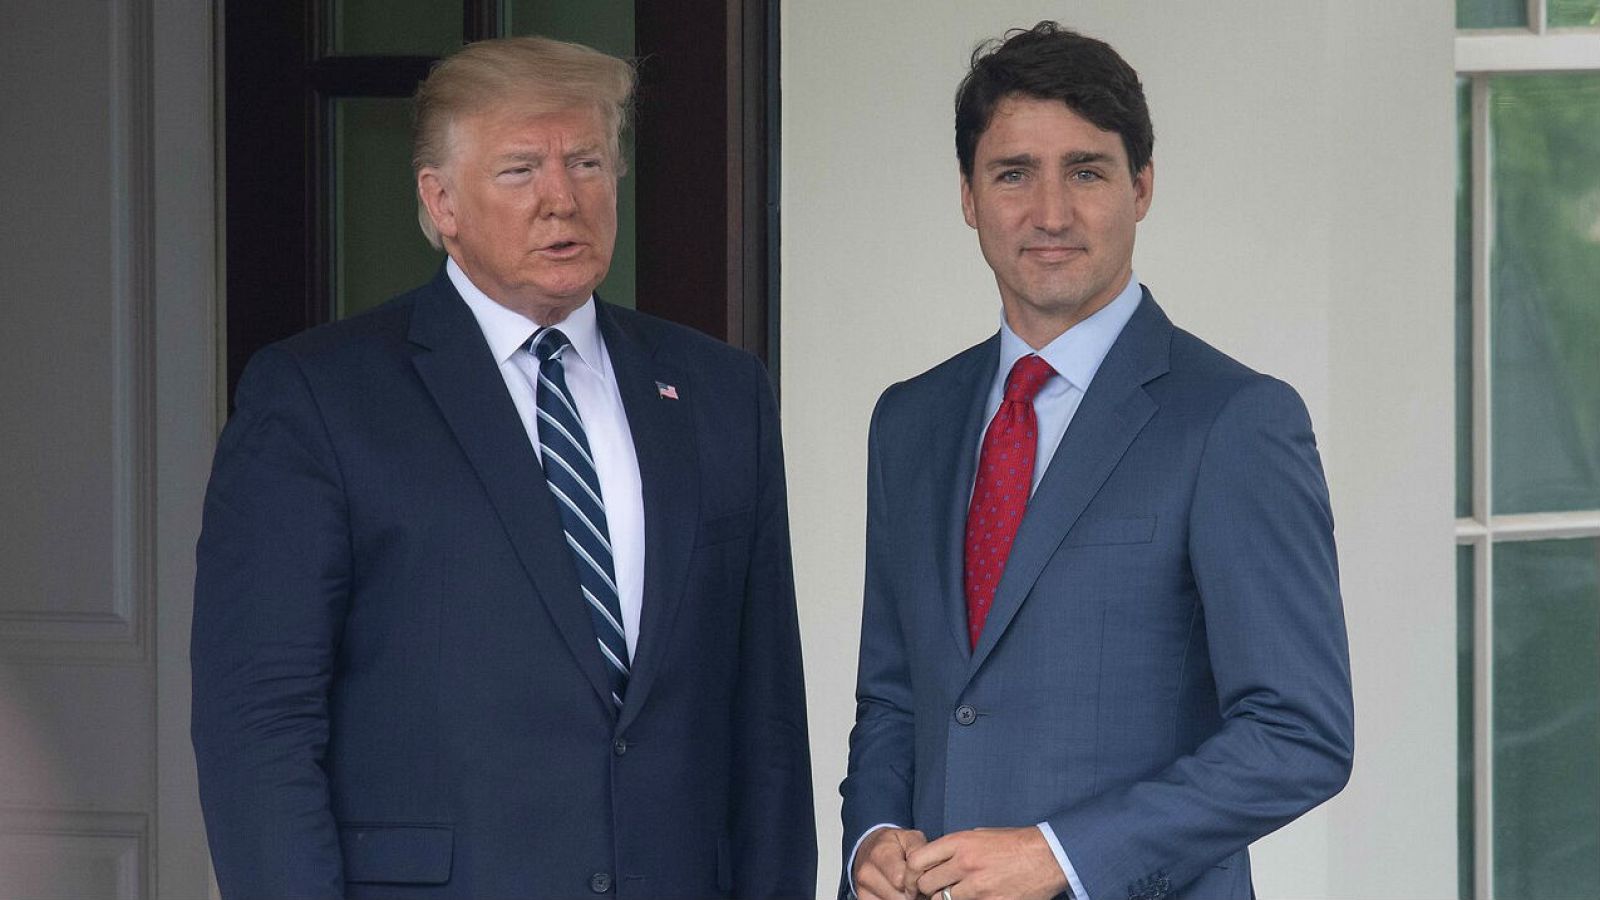 El presidente estadounidense, Donald Trump, saluda al primer ministro canadiense, Justin Trudeau, en la Casa Blanca en Washington, DC en una imagen de archivo.